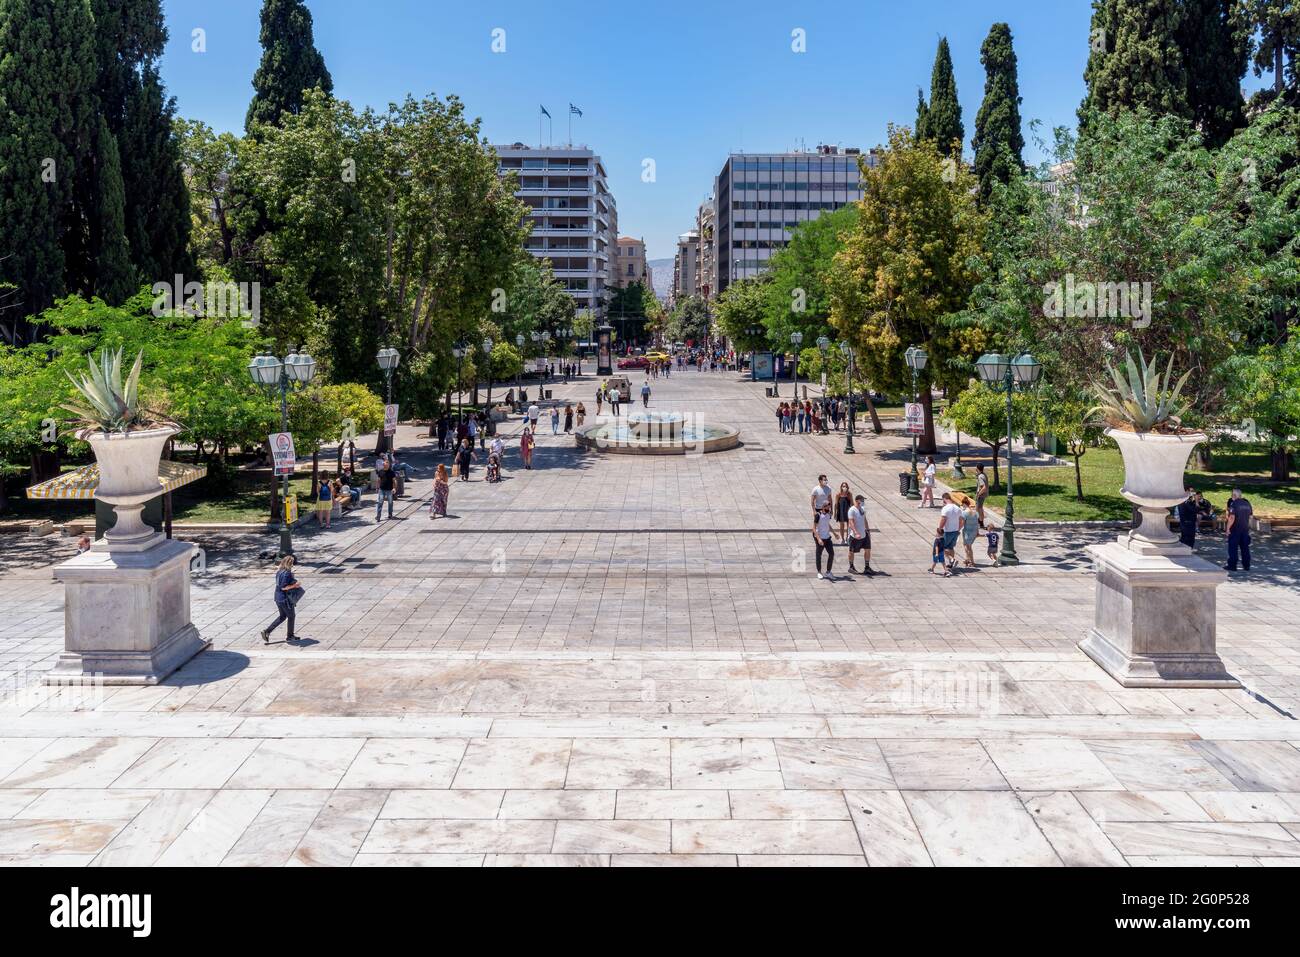 Athènes, Attique, Grèce. Place Syntagma au centre de la ville d'Athènes à l'heure de pointe pleine de personnes marchant ou se reposant sur les bancs Banque D'Images